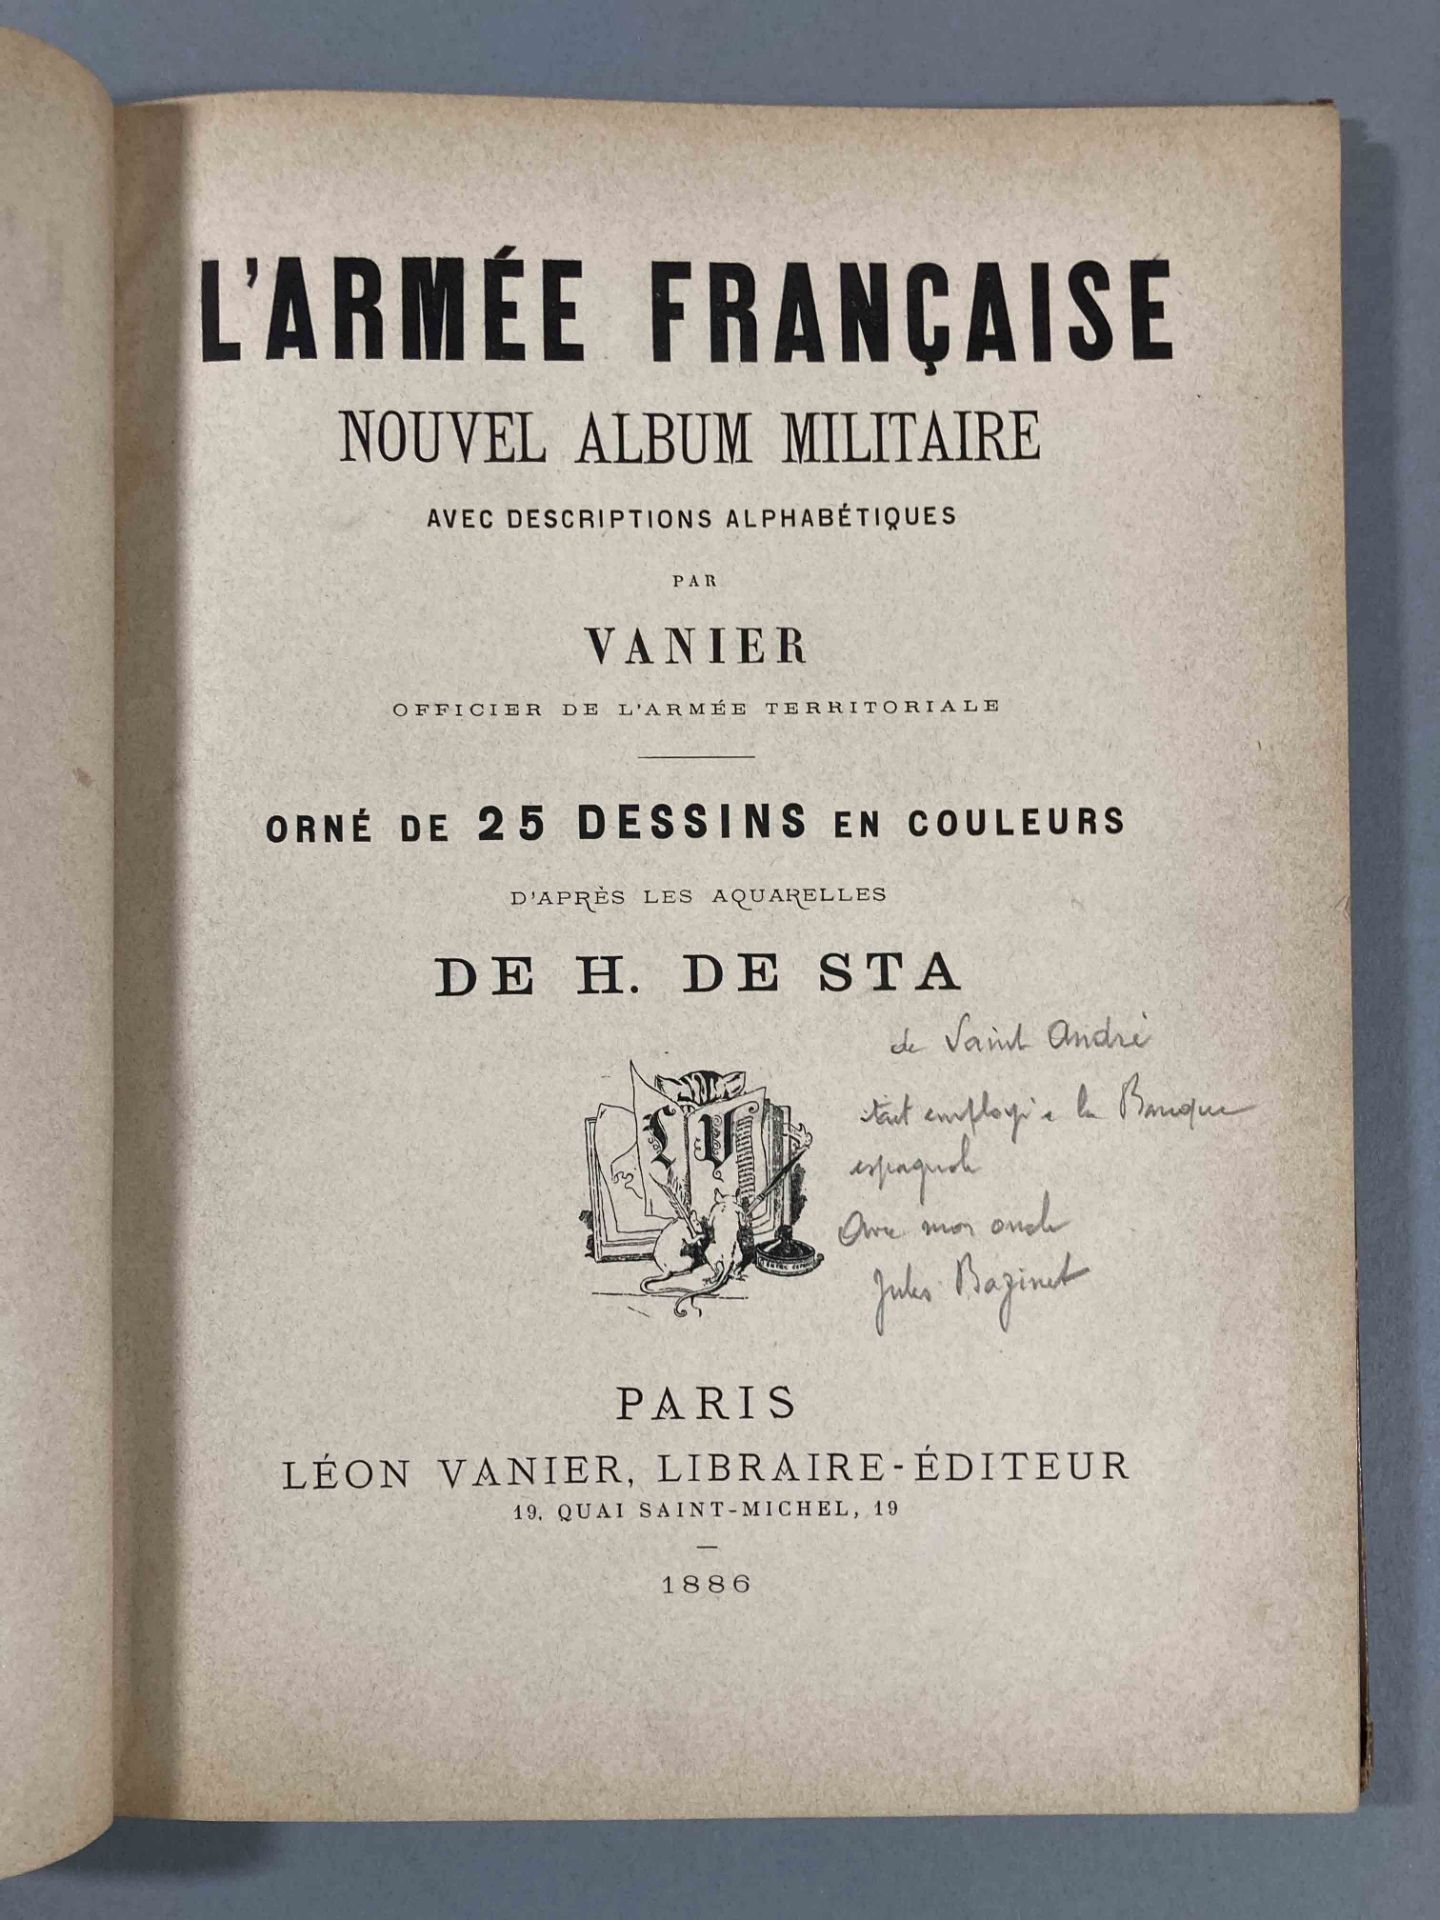 VANIER et H de STA. L’armée française » Abécédaire illustrée. Librairie Léon Vanier- Paris. 1886. - Bild 4 aus 8